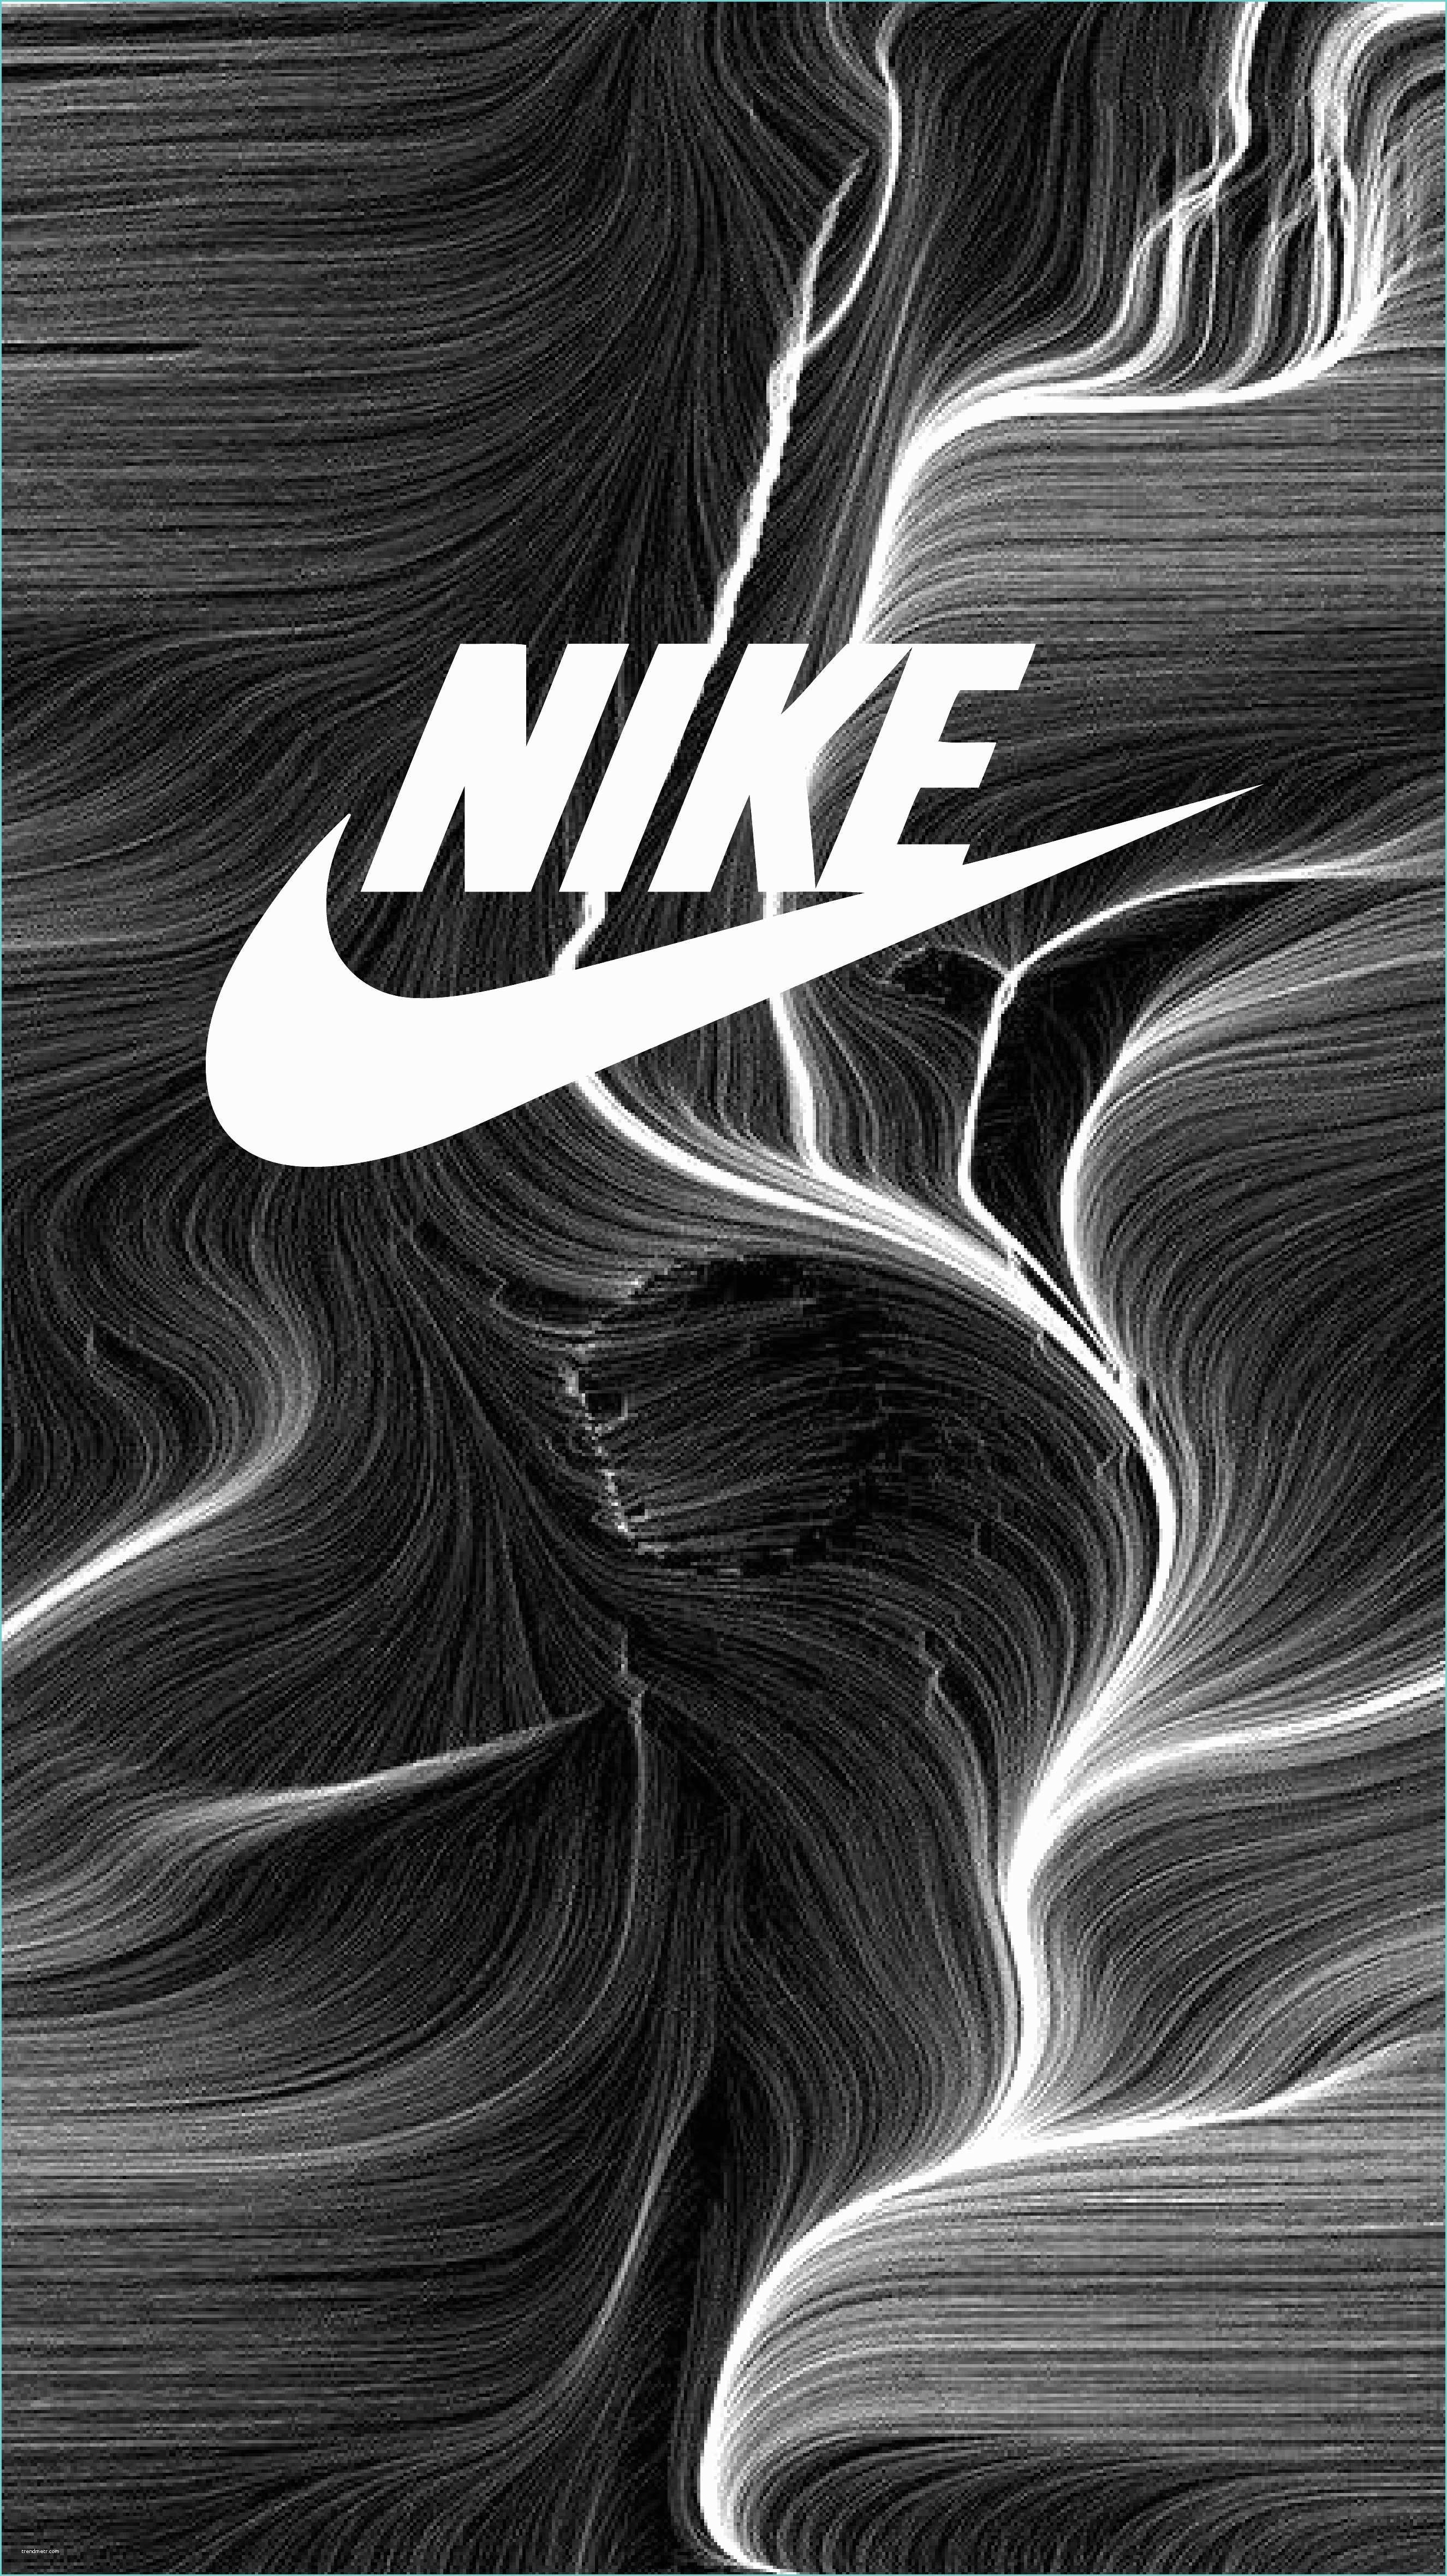 Fond Dcran De Nike Fond D Ecran Nike Hd Fonds D Cran Hd Avec Fond D Cran Nike